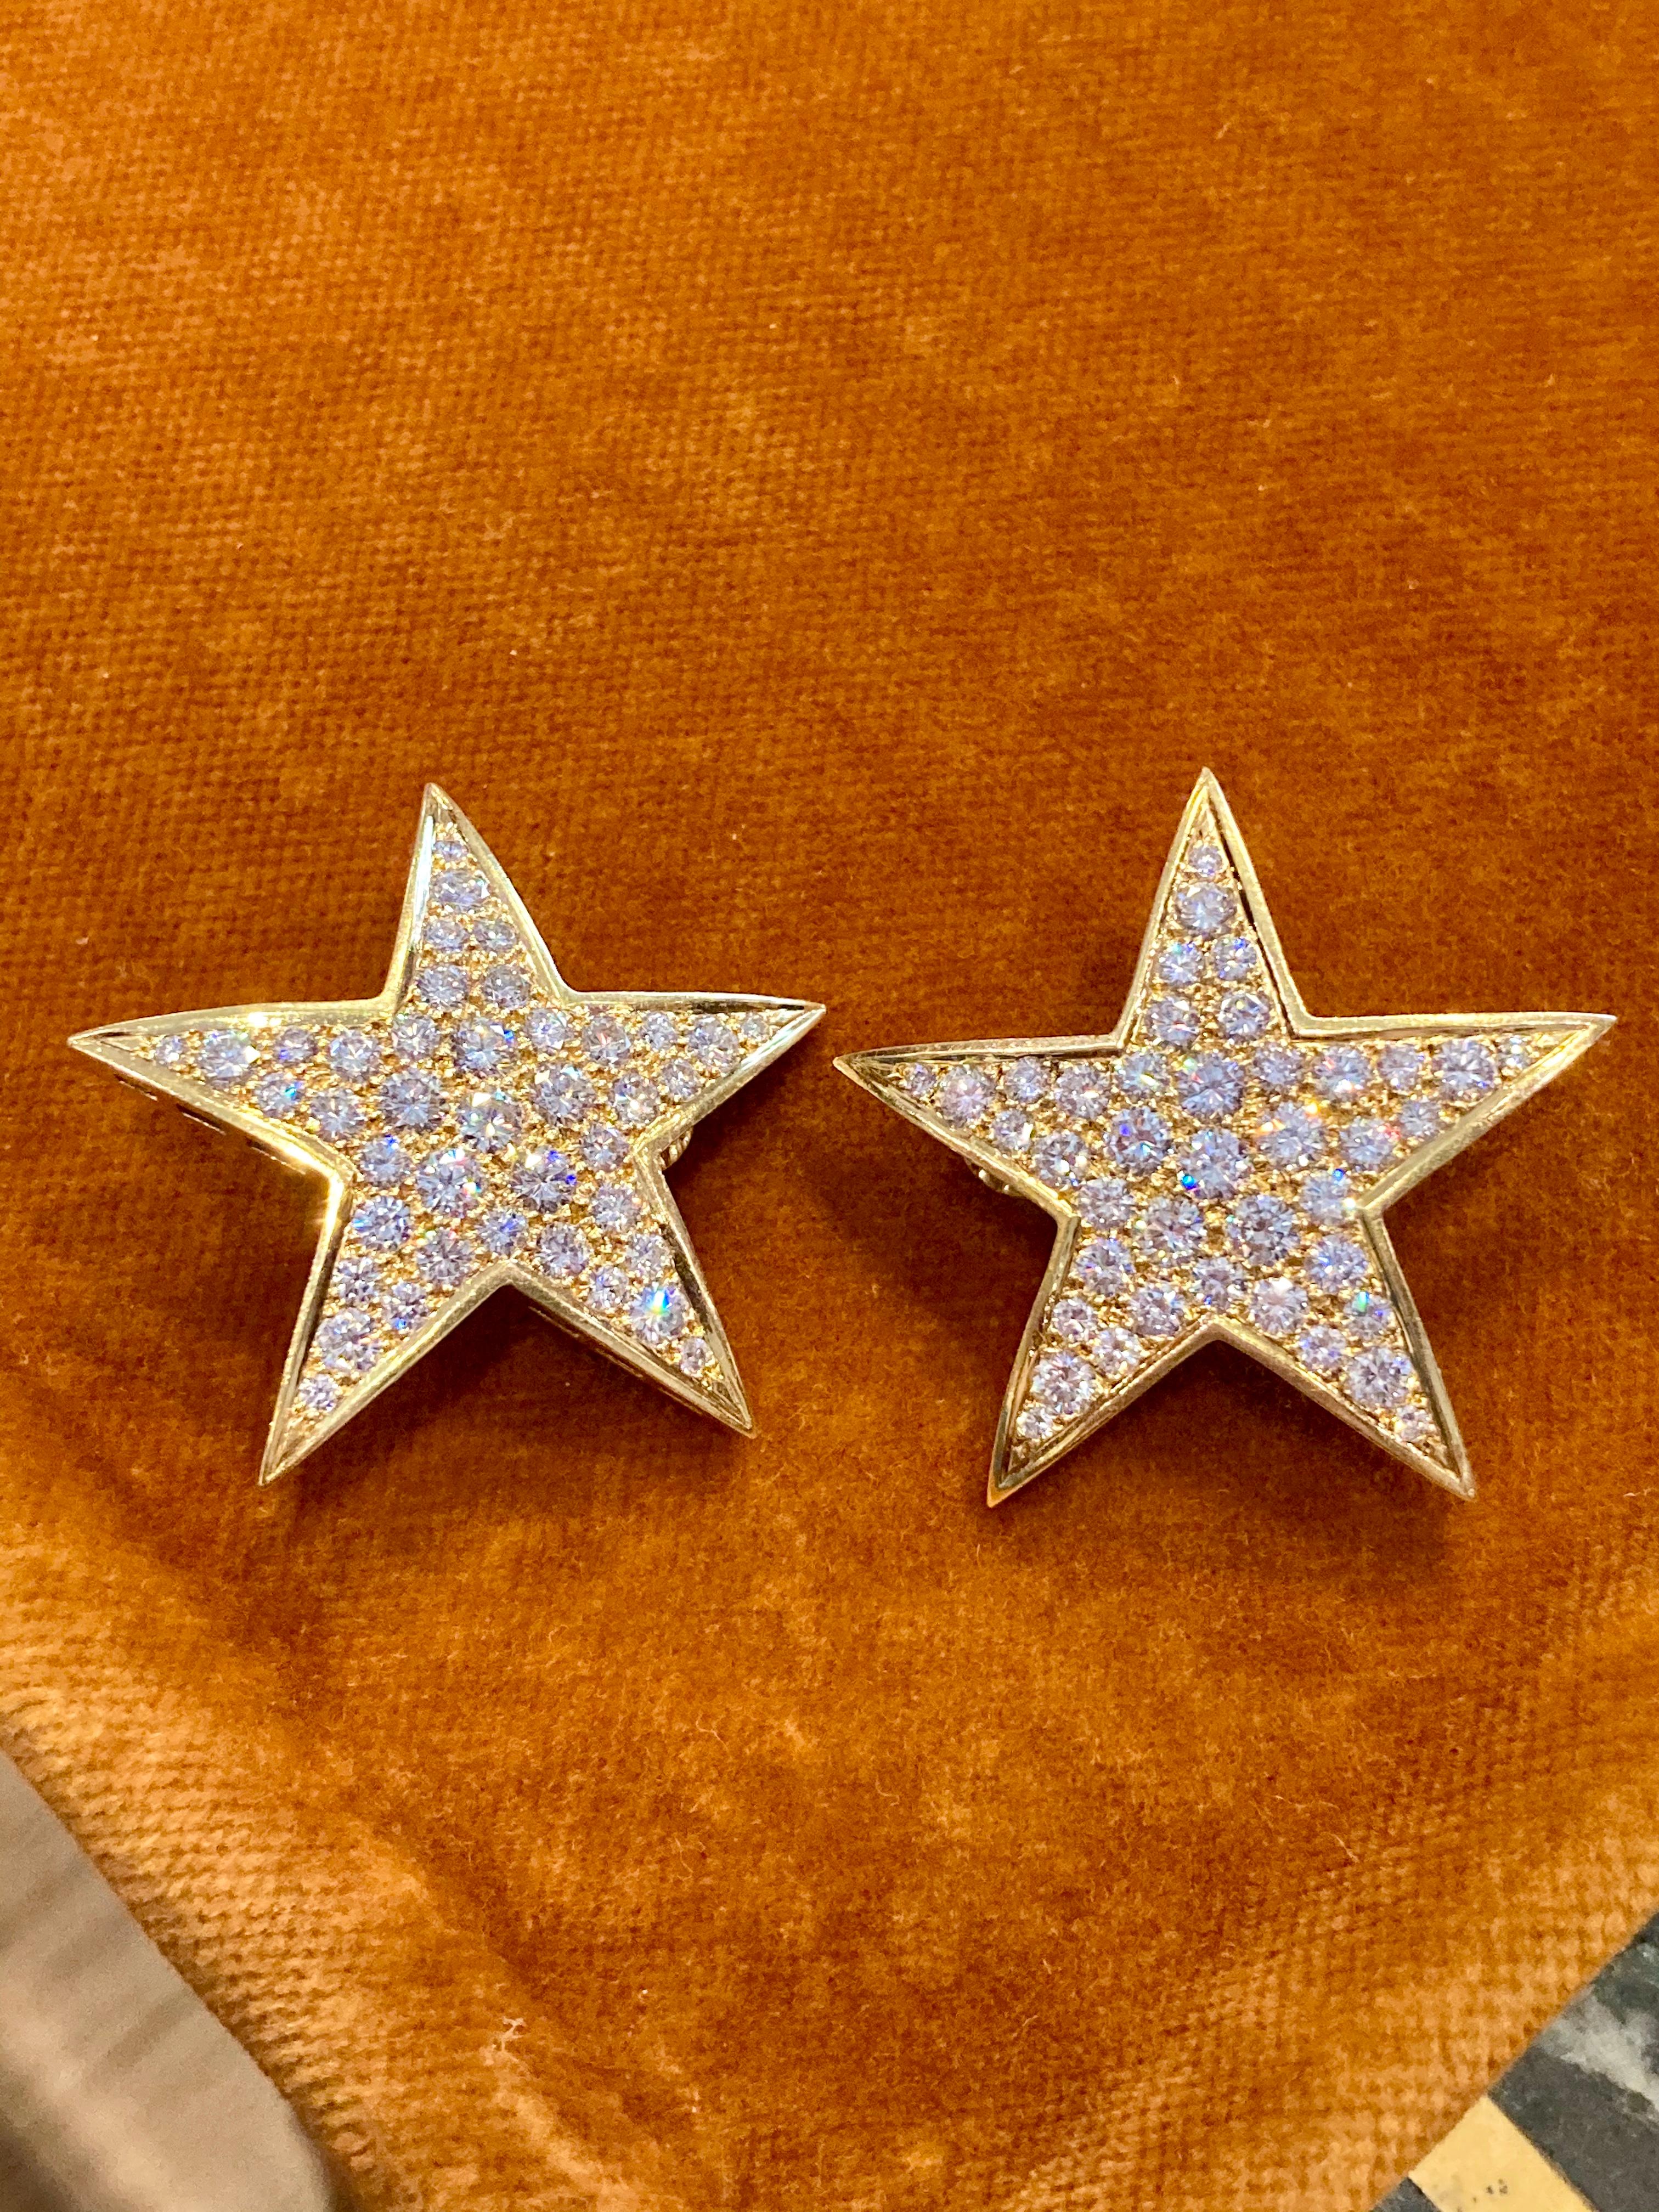 Atemberaubende Diamant-Stern-Ohrclips um 1970, mit offener Rückseite, die das Funkeln der Steine noch besser zur Geltung bringt. Montiert in 18 Karat Gelbgold mit 5 Karat Diamanten im Brillantschliff.